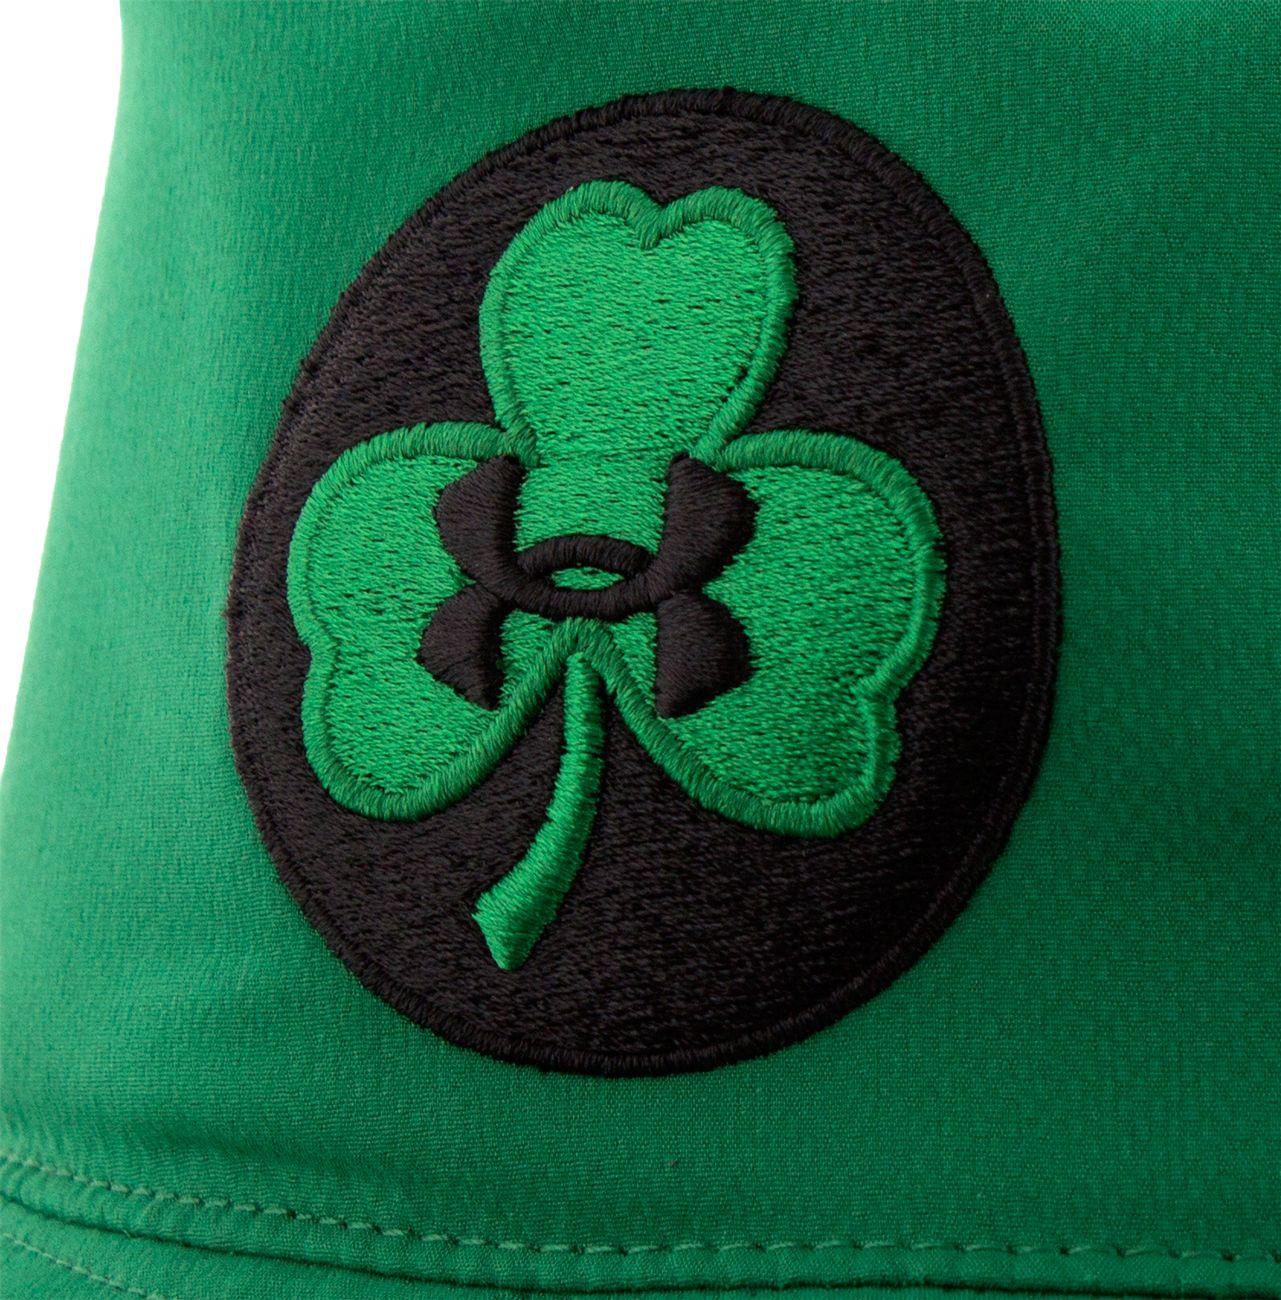 Shamrock Bucket Hat in Green for Men - Lyst